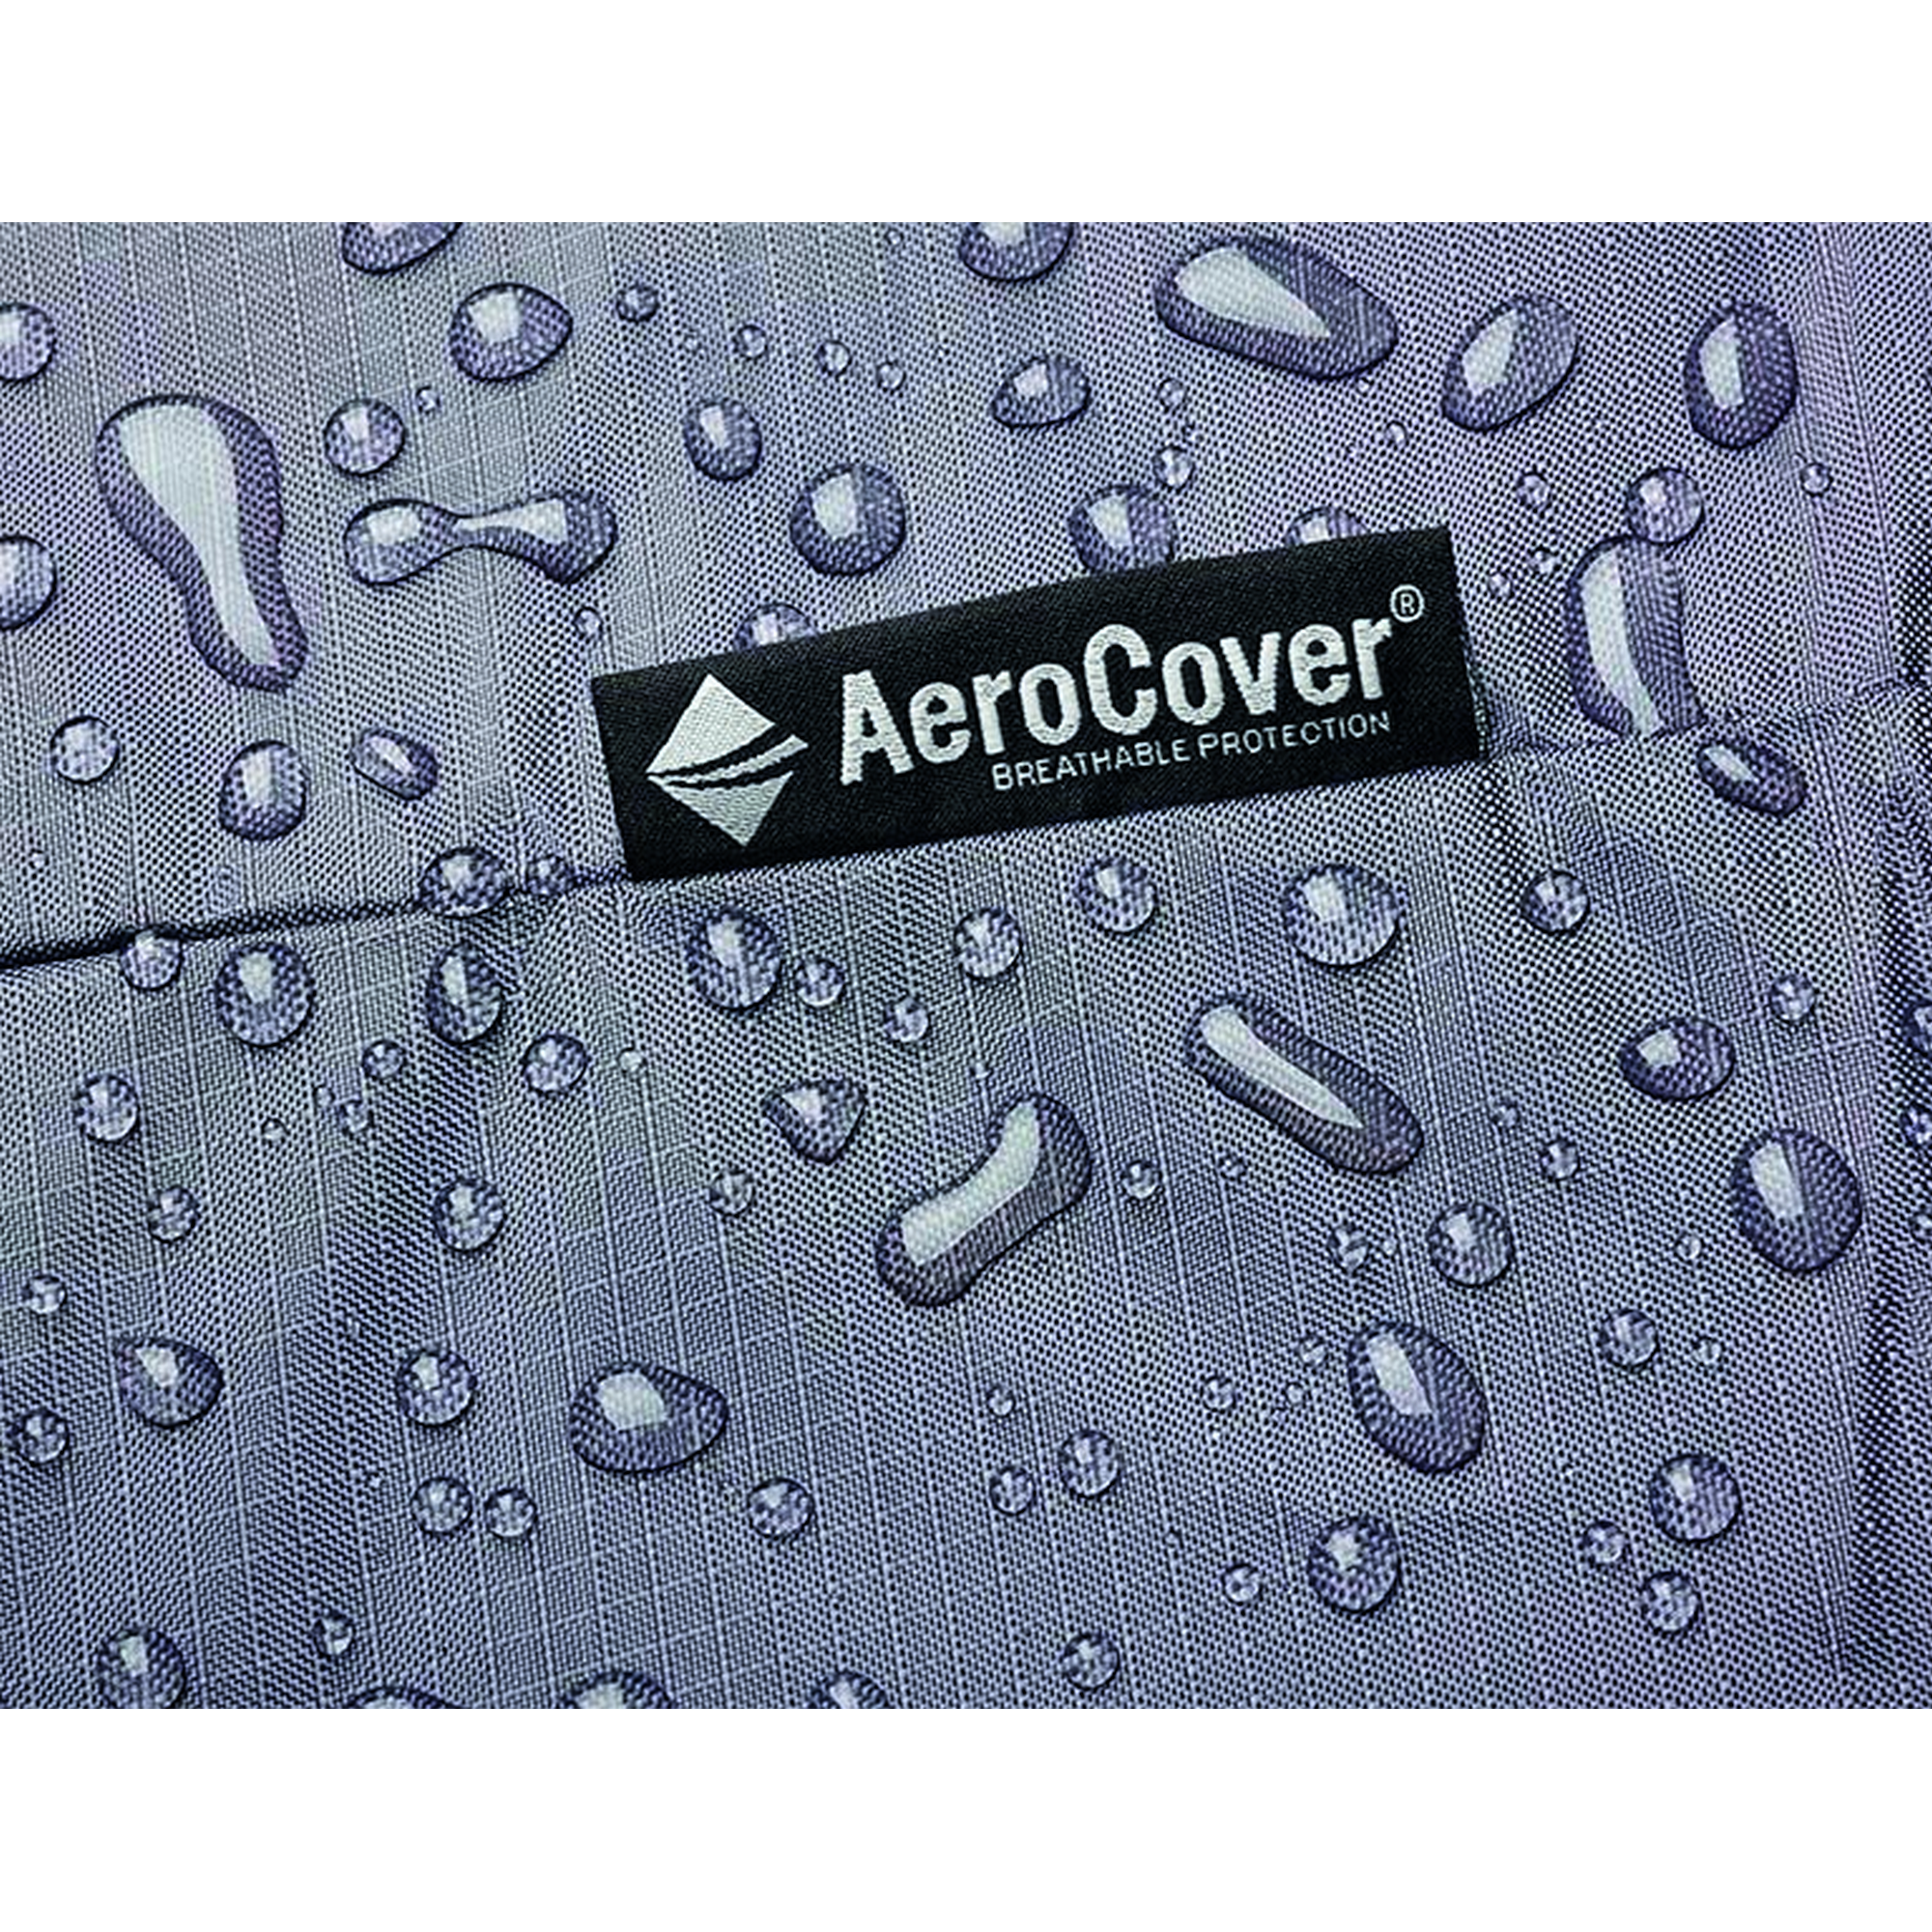 Schutzhülle 'AeroCover' anthrazit 270 x 210 x 70 cm, für Loungemöbel + product picture